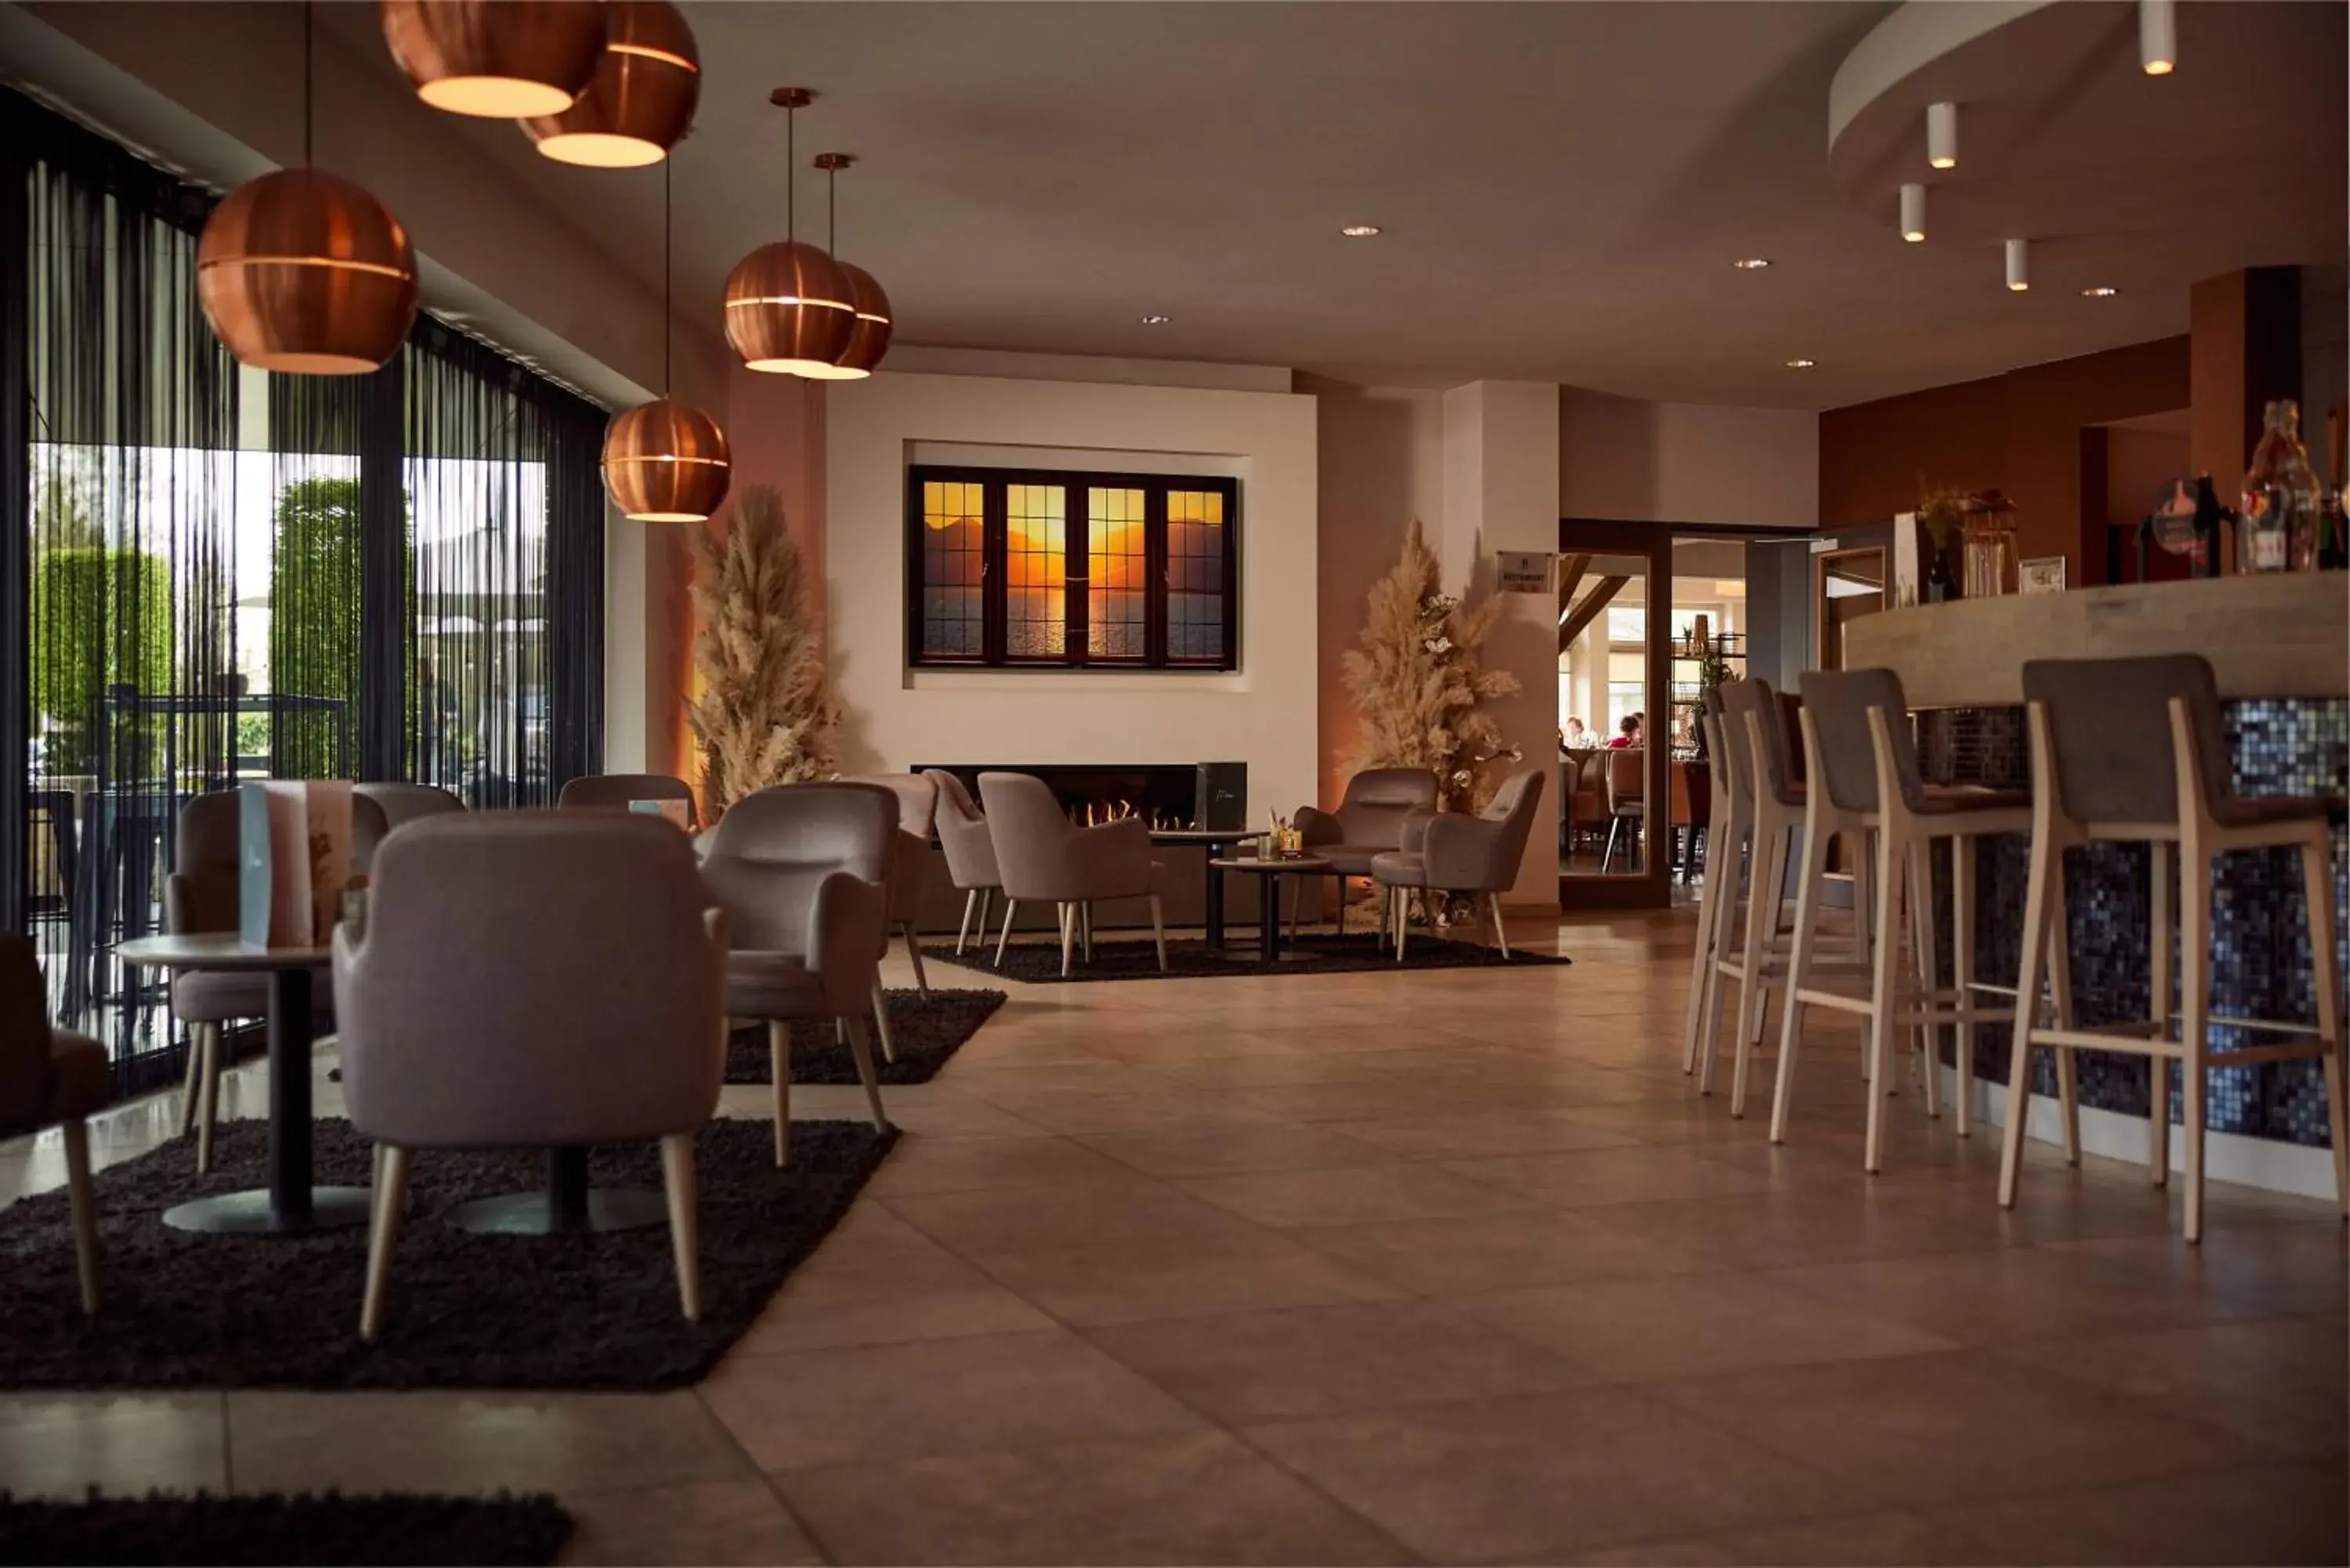 Restaurant/places to eat, Lounge/Bar in Van der Valk Hotel Dennenhof